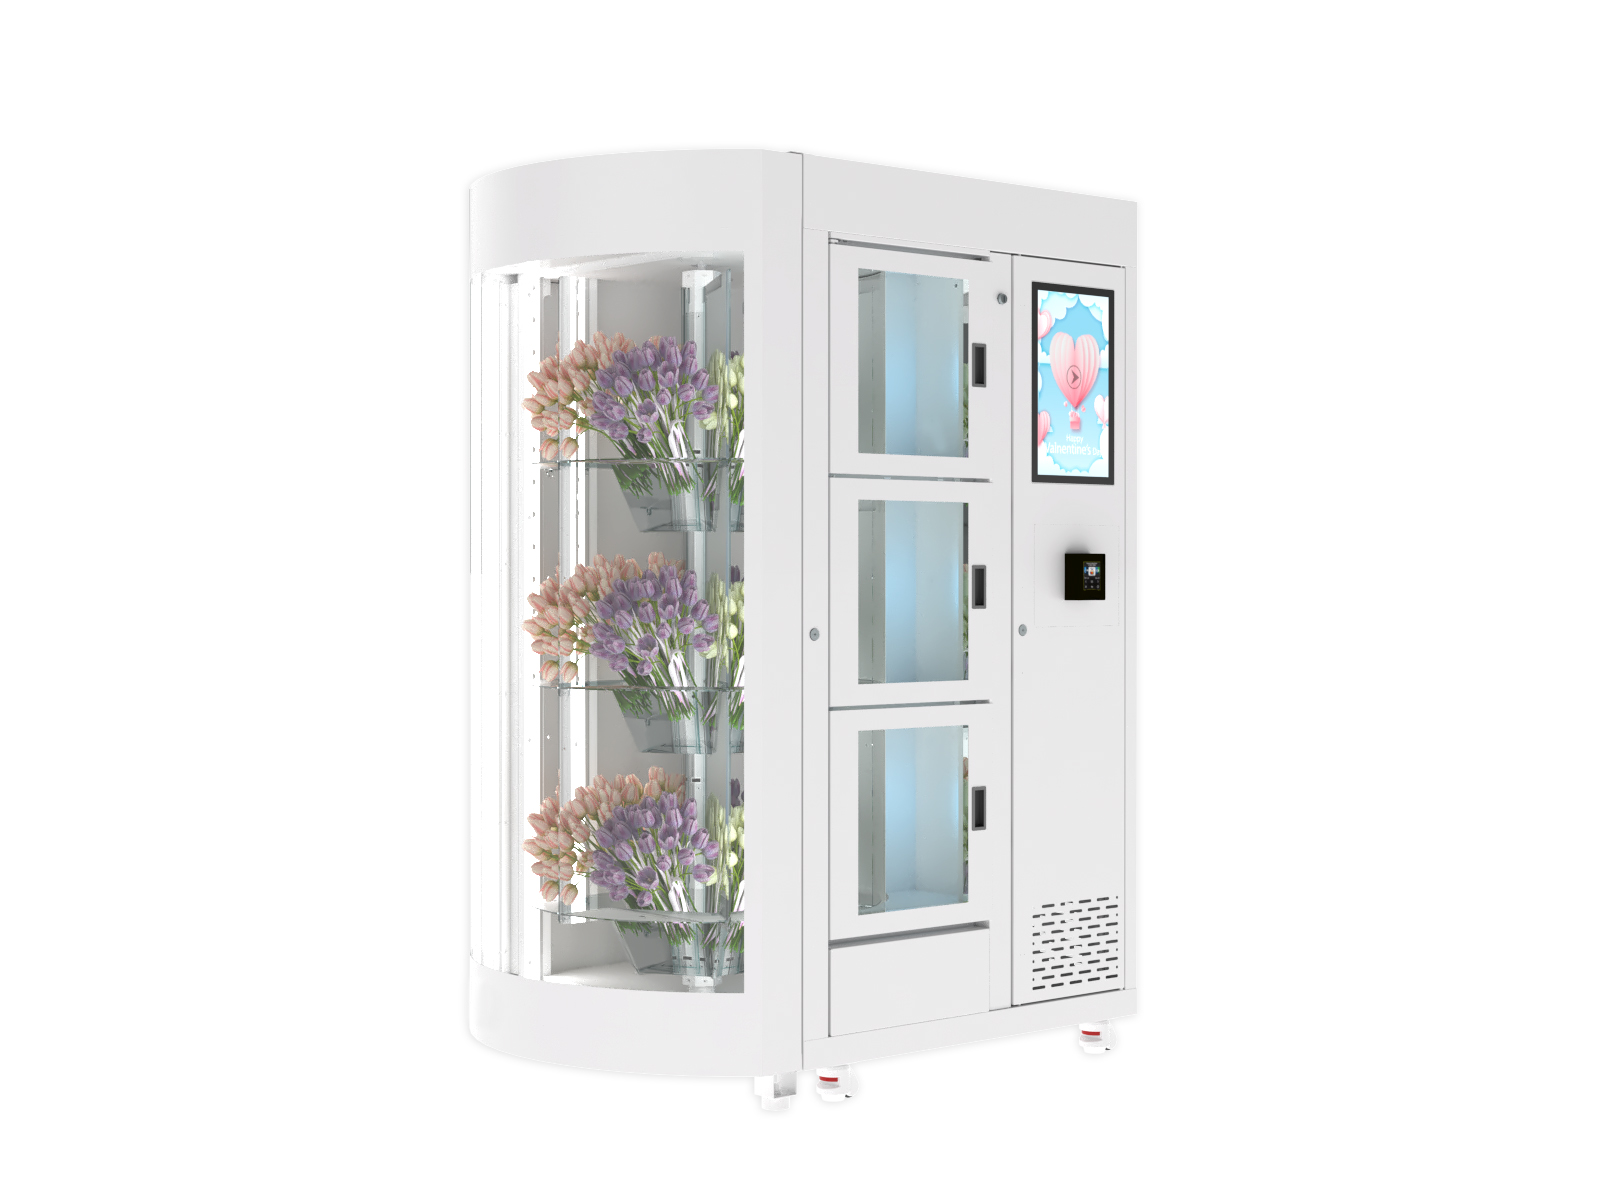 Blumen Automat Vending